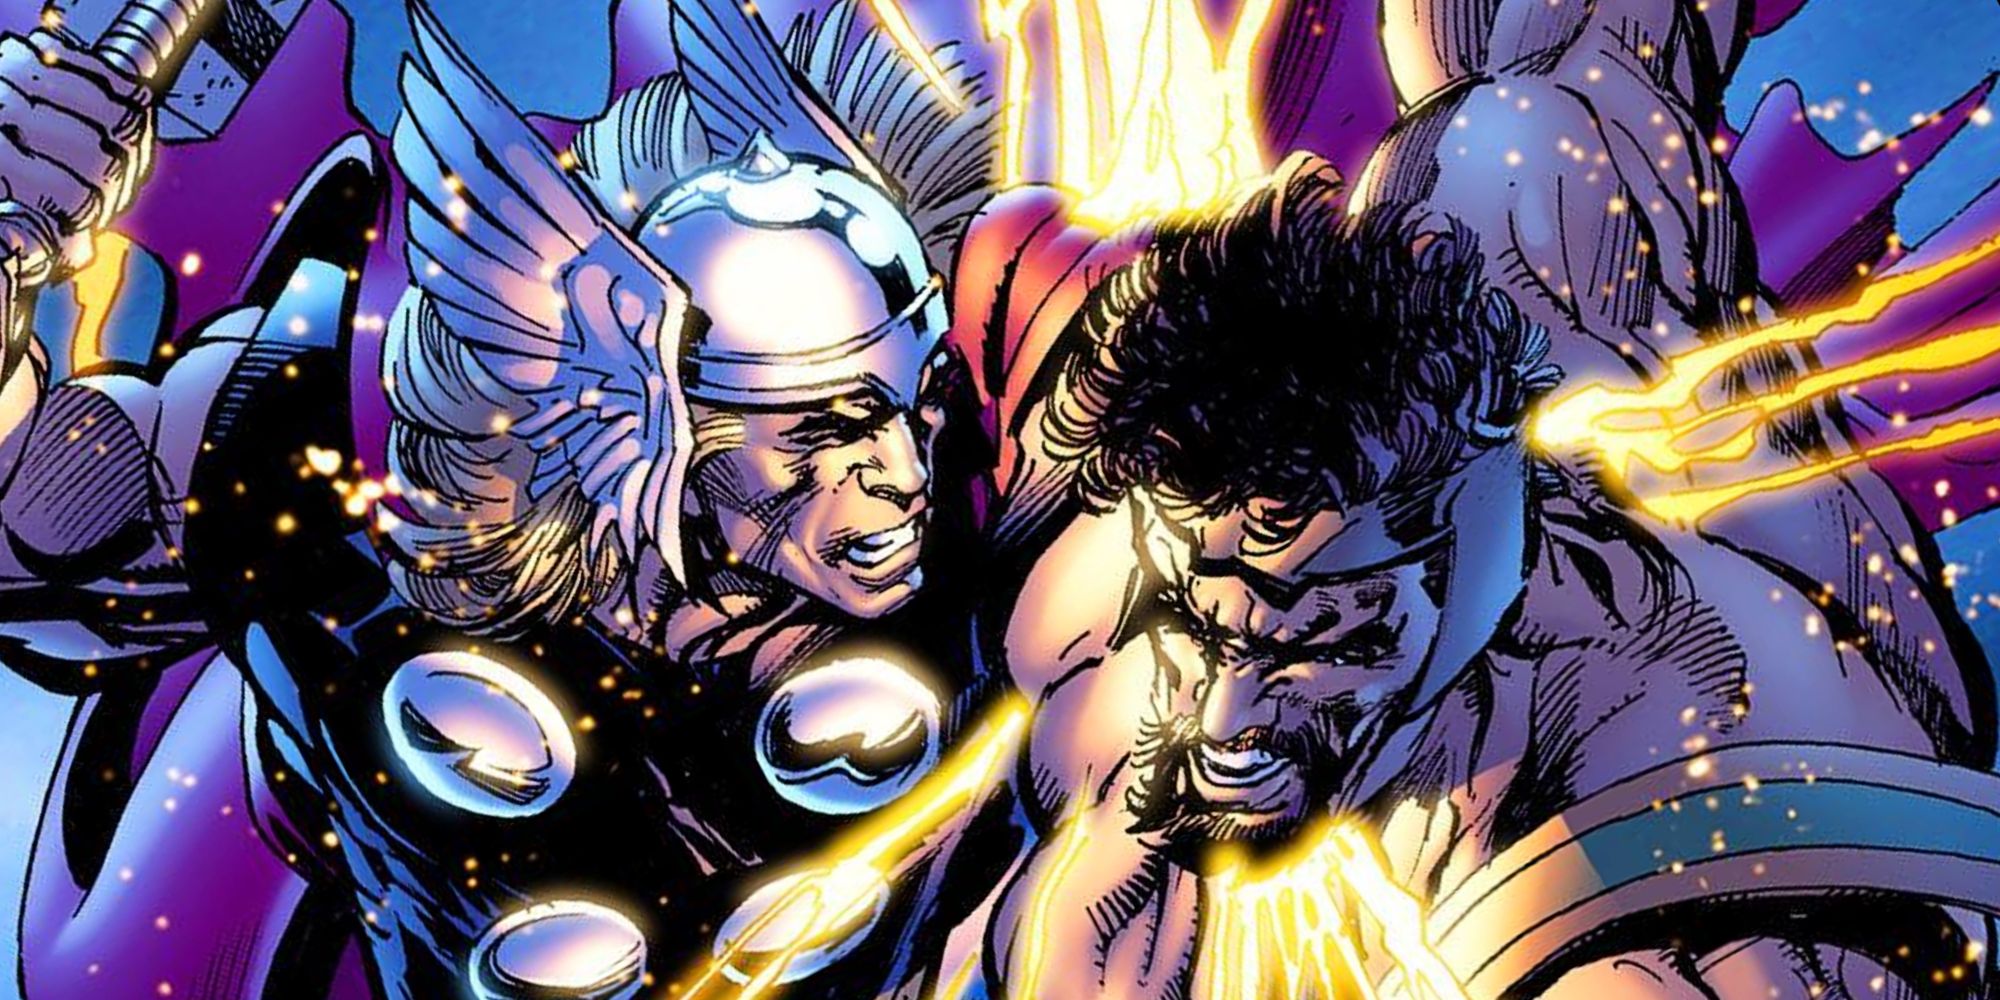 Thor vs Hercules in Marvel Comics